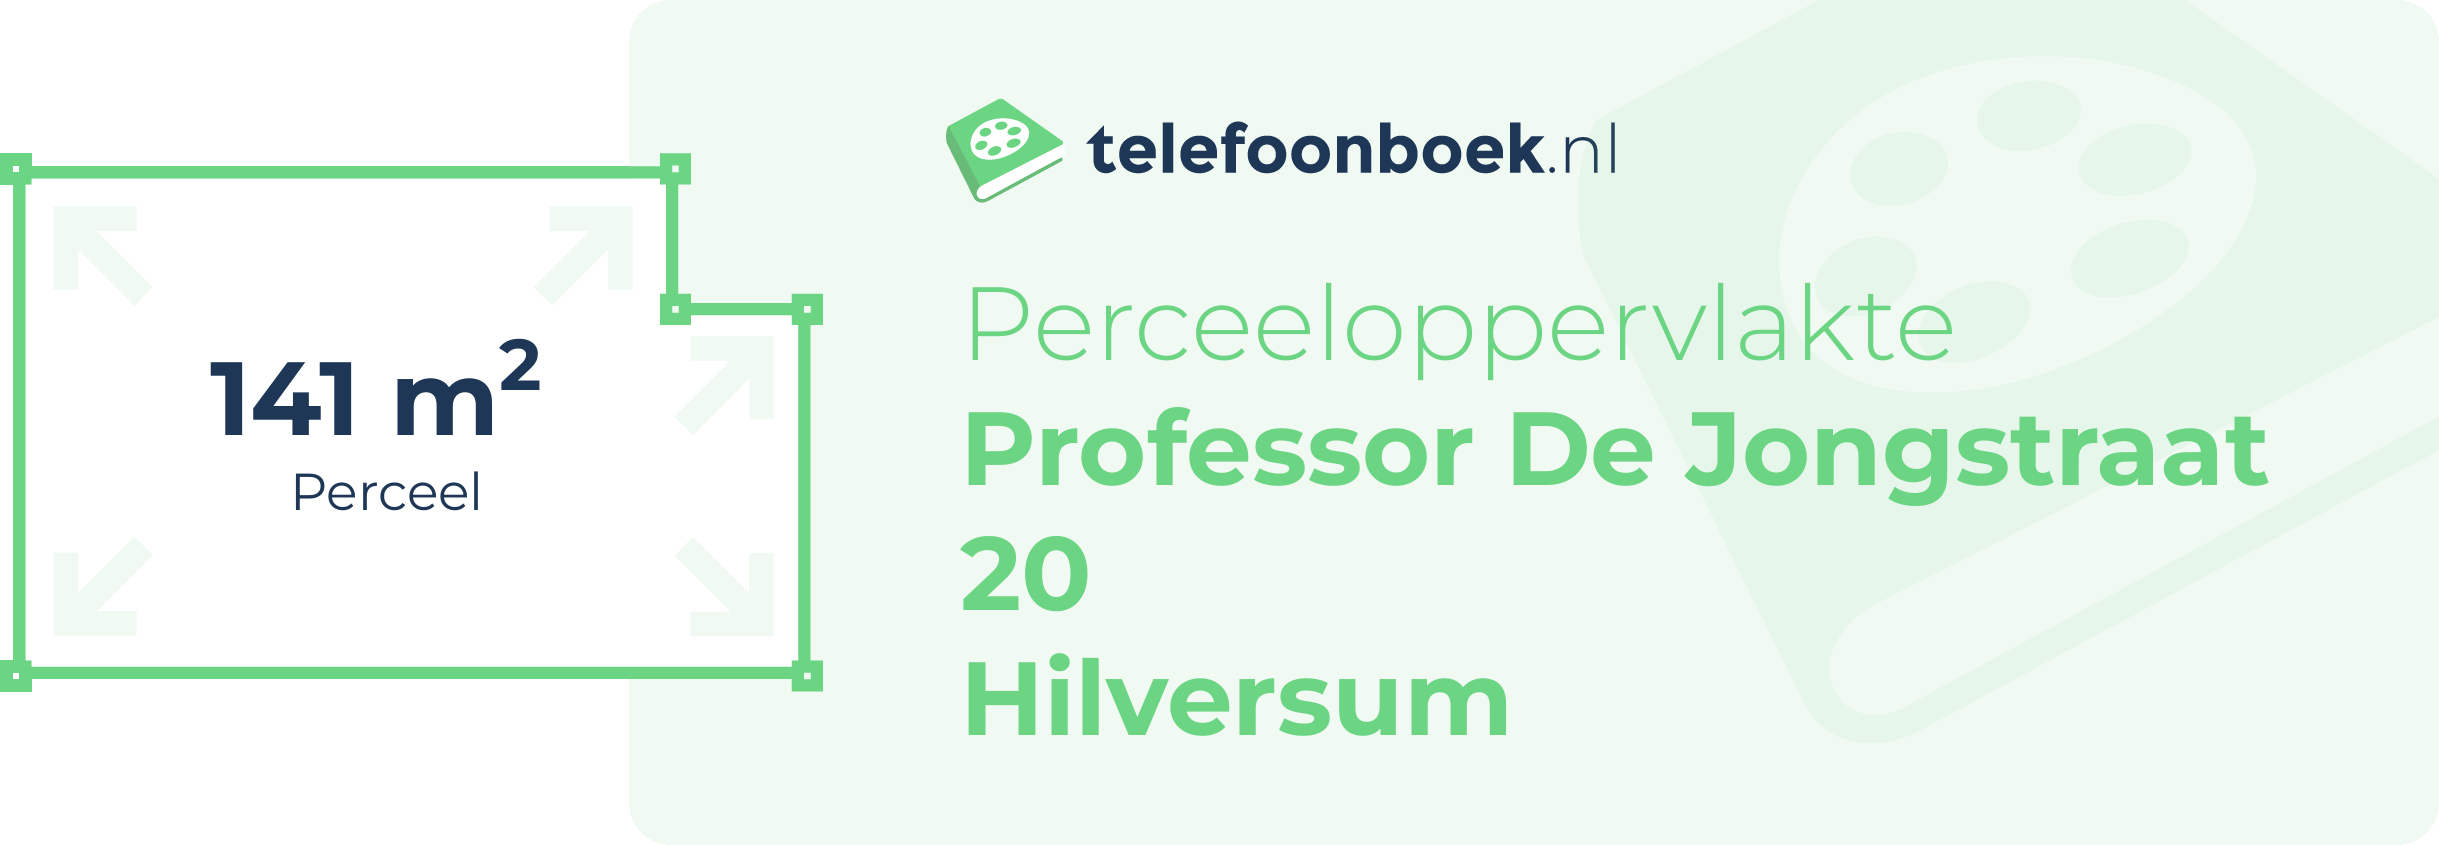 Perceeloppervlakte Professor De Jongstraat 20 Hilversum